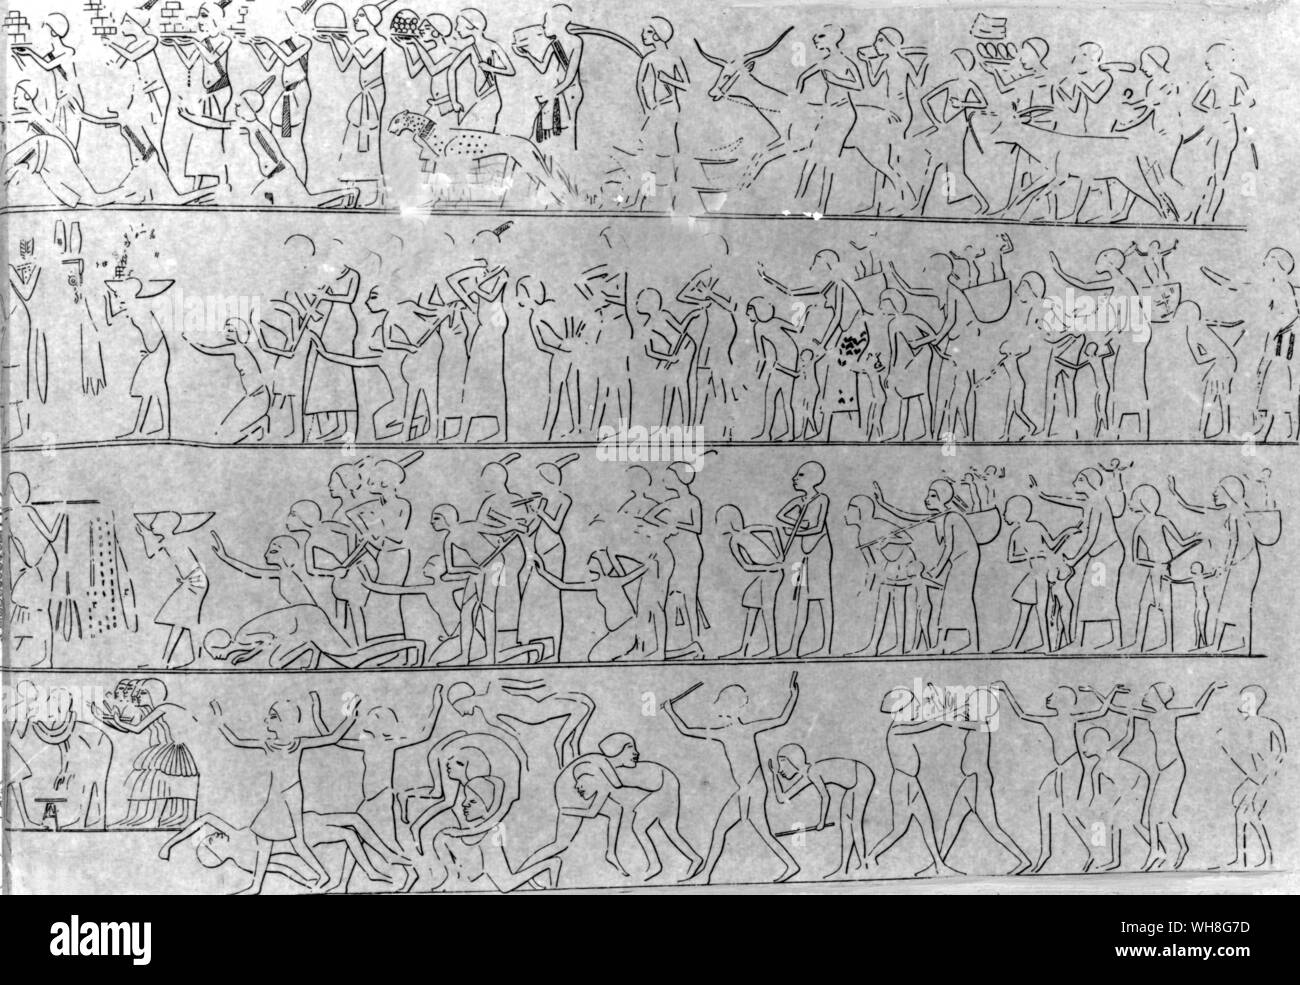 Un detalle de las procesiones y celebraciones de los nubios durante el desfile de relaciones homenaje en el año 12. Tutankamón por Christiane Desroches Noblecourt, página 152. Foto de stock